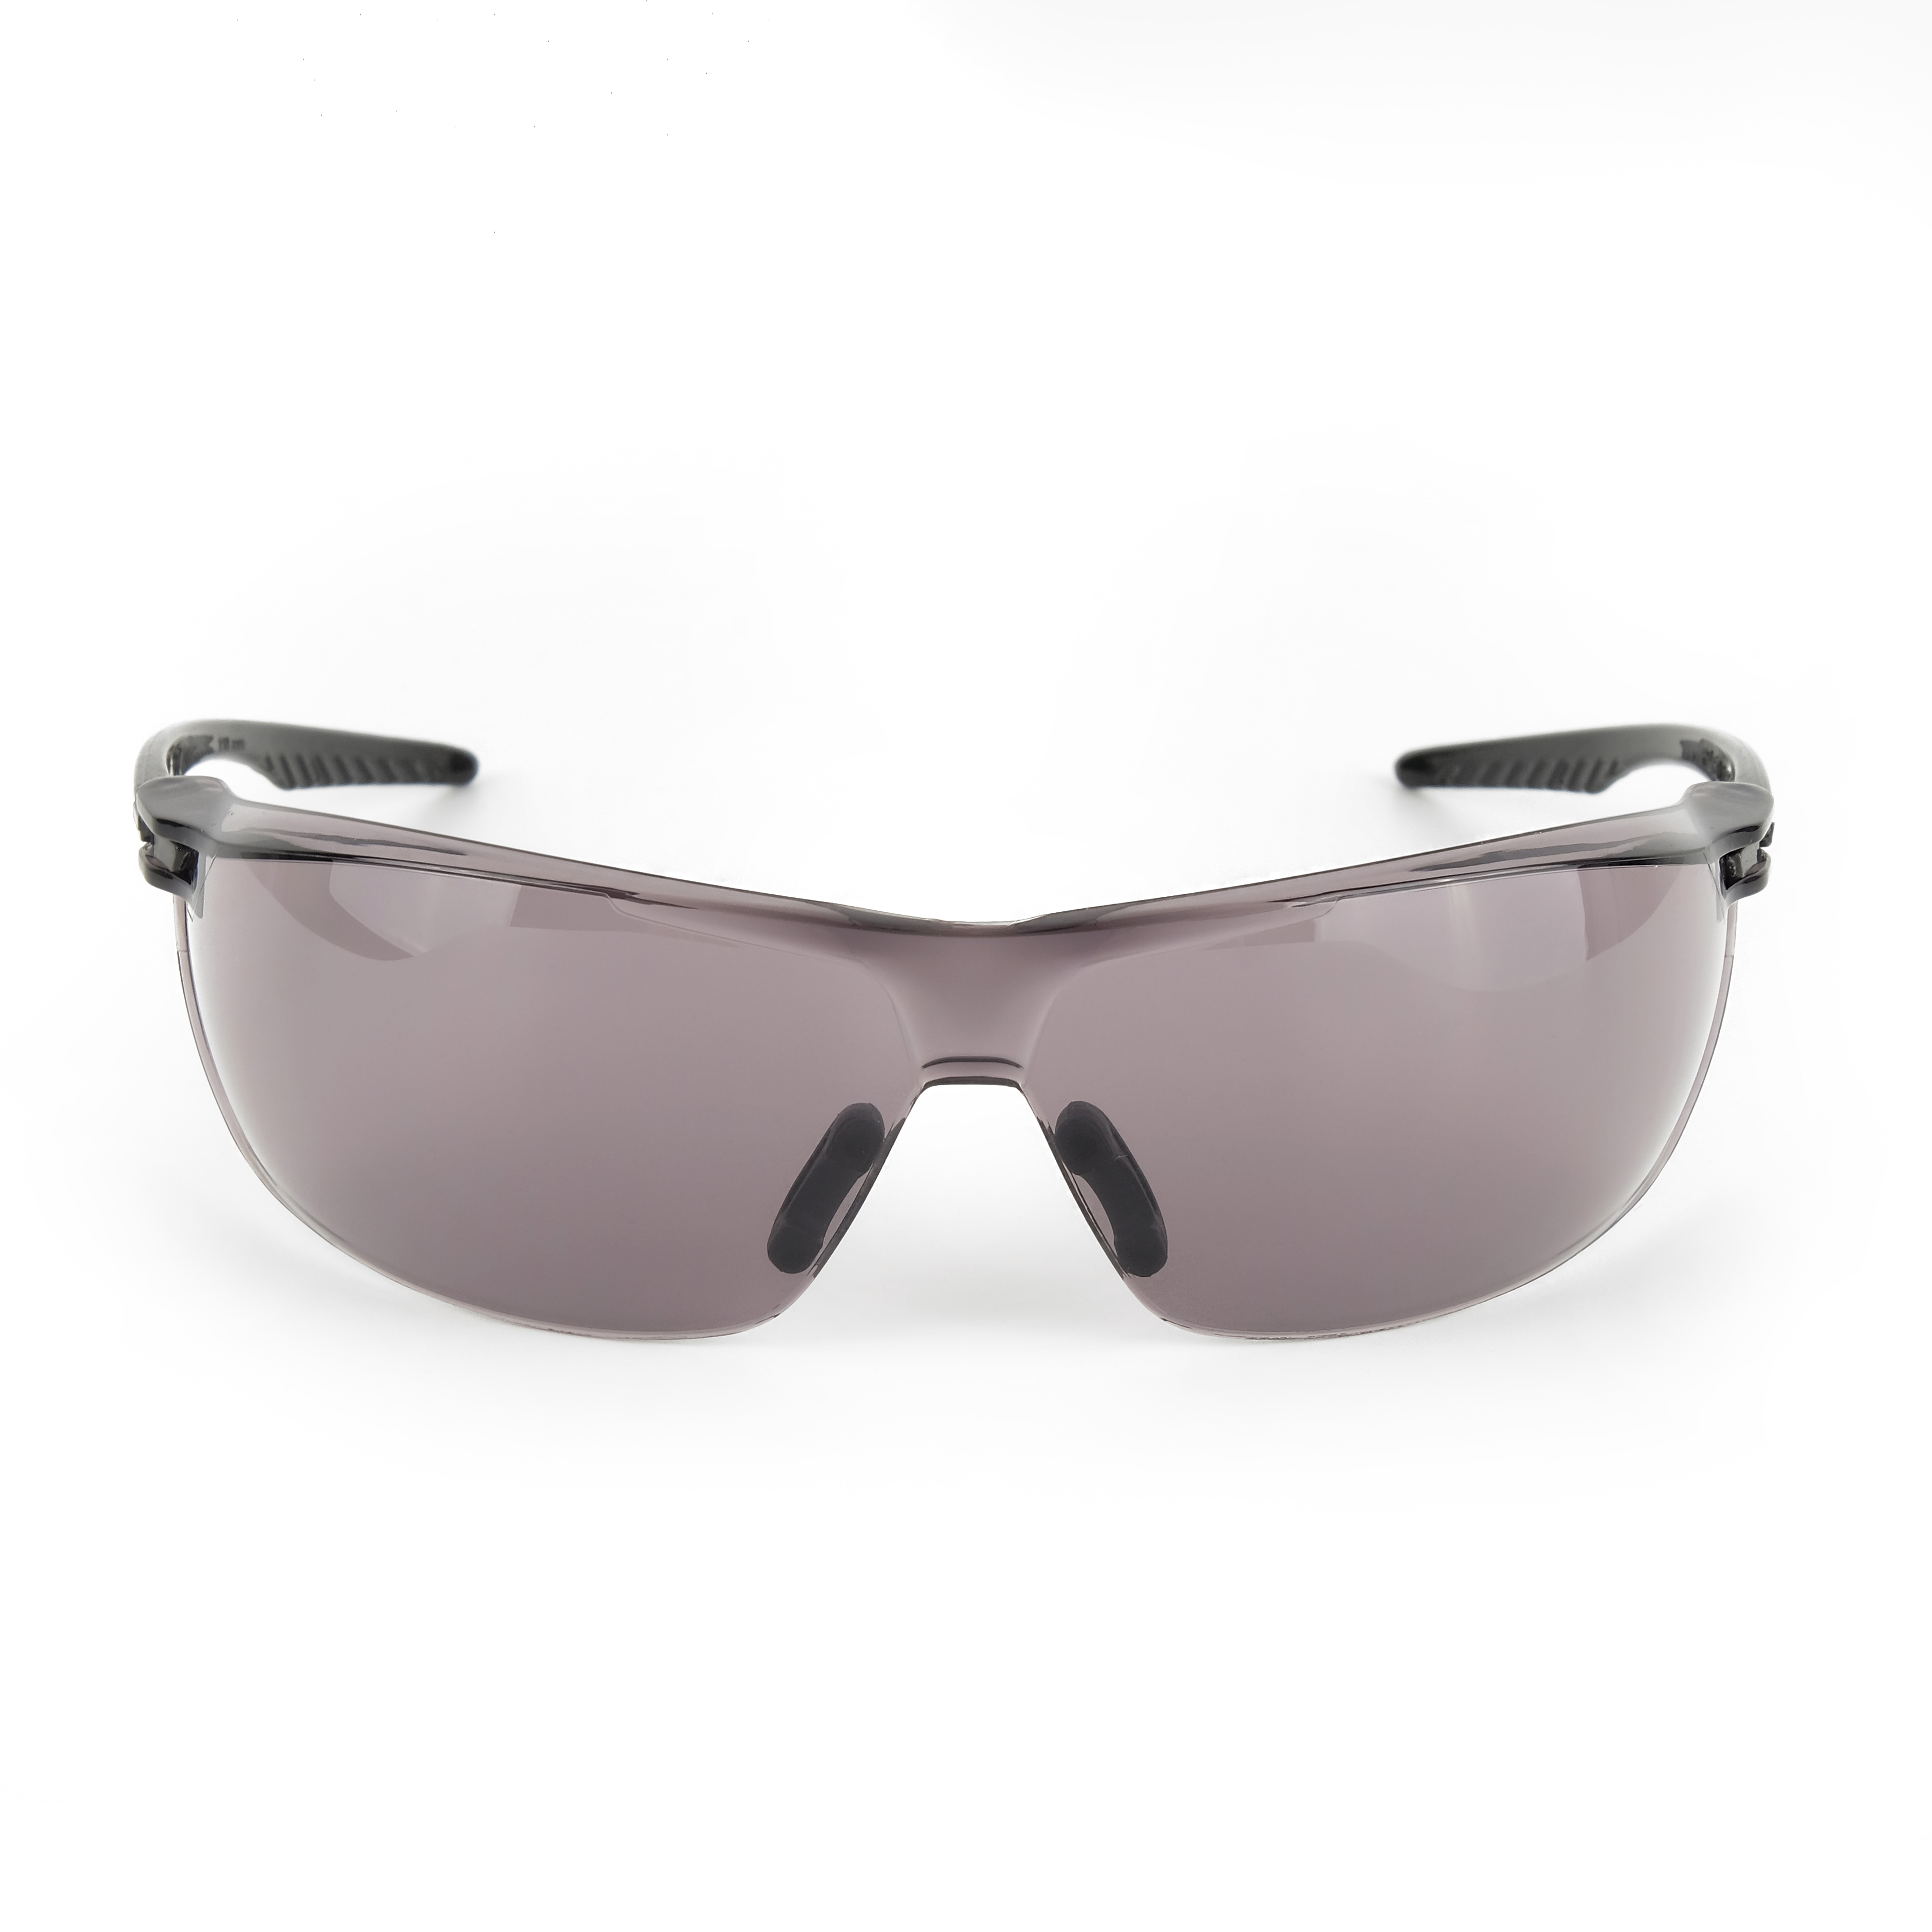 О88 SURGUT super (5-2,5 РС) очки защитные открытые с мягким носоупором